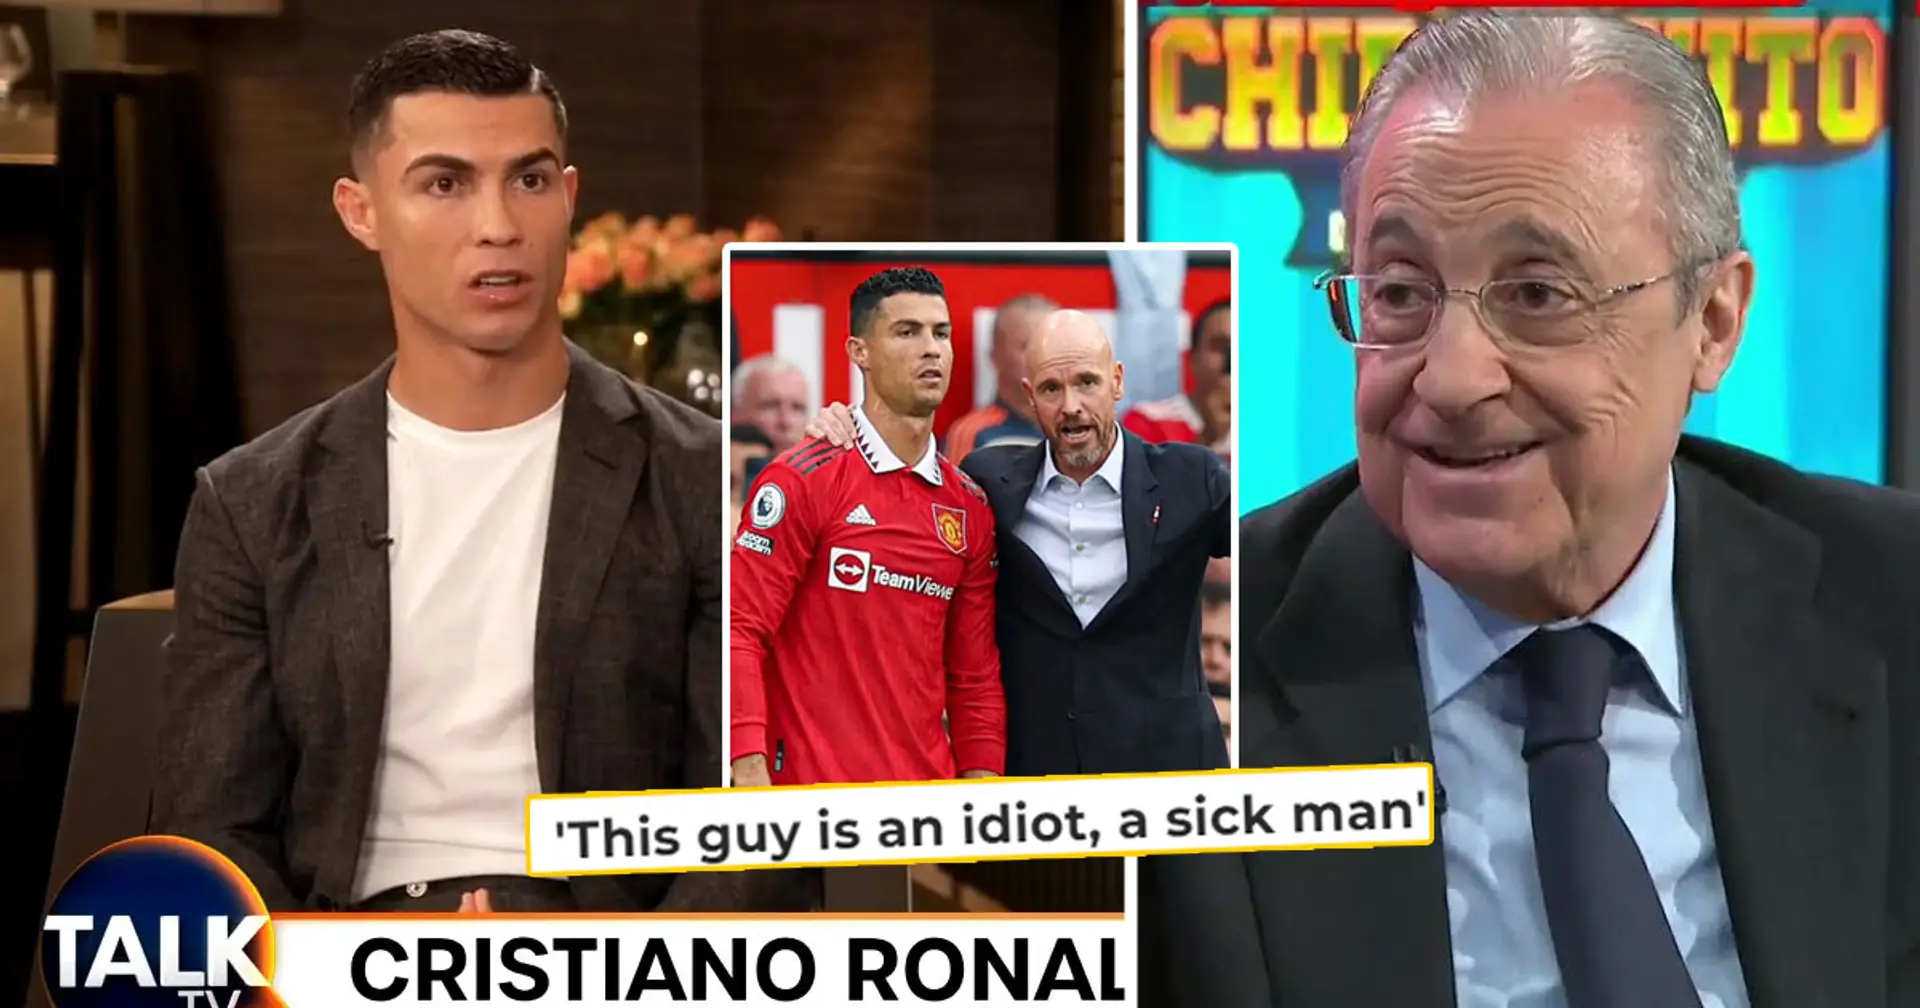 'Florentino tenía razón': la vieja cita filtrada de Pérez resurge tras la entrevista impactante de Cristiano Ronaldo sobre Man United y Ten Hag